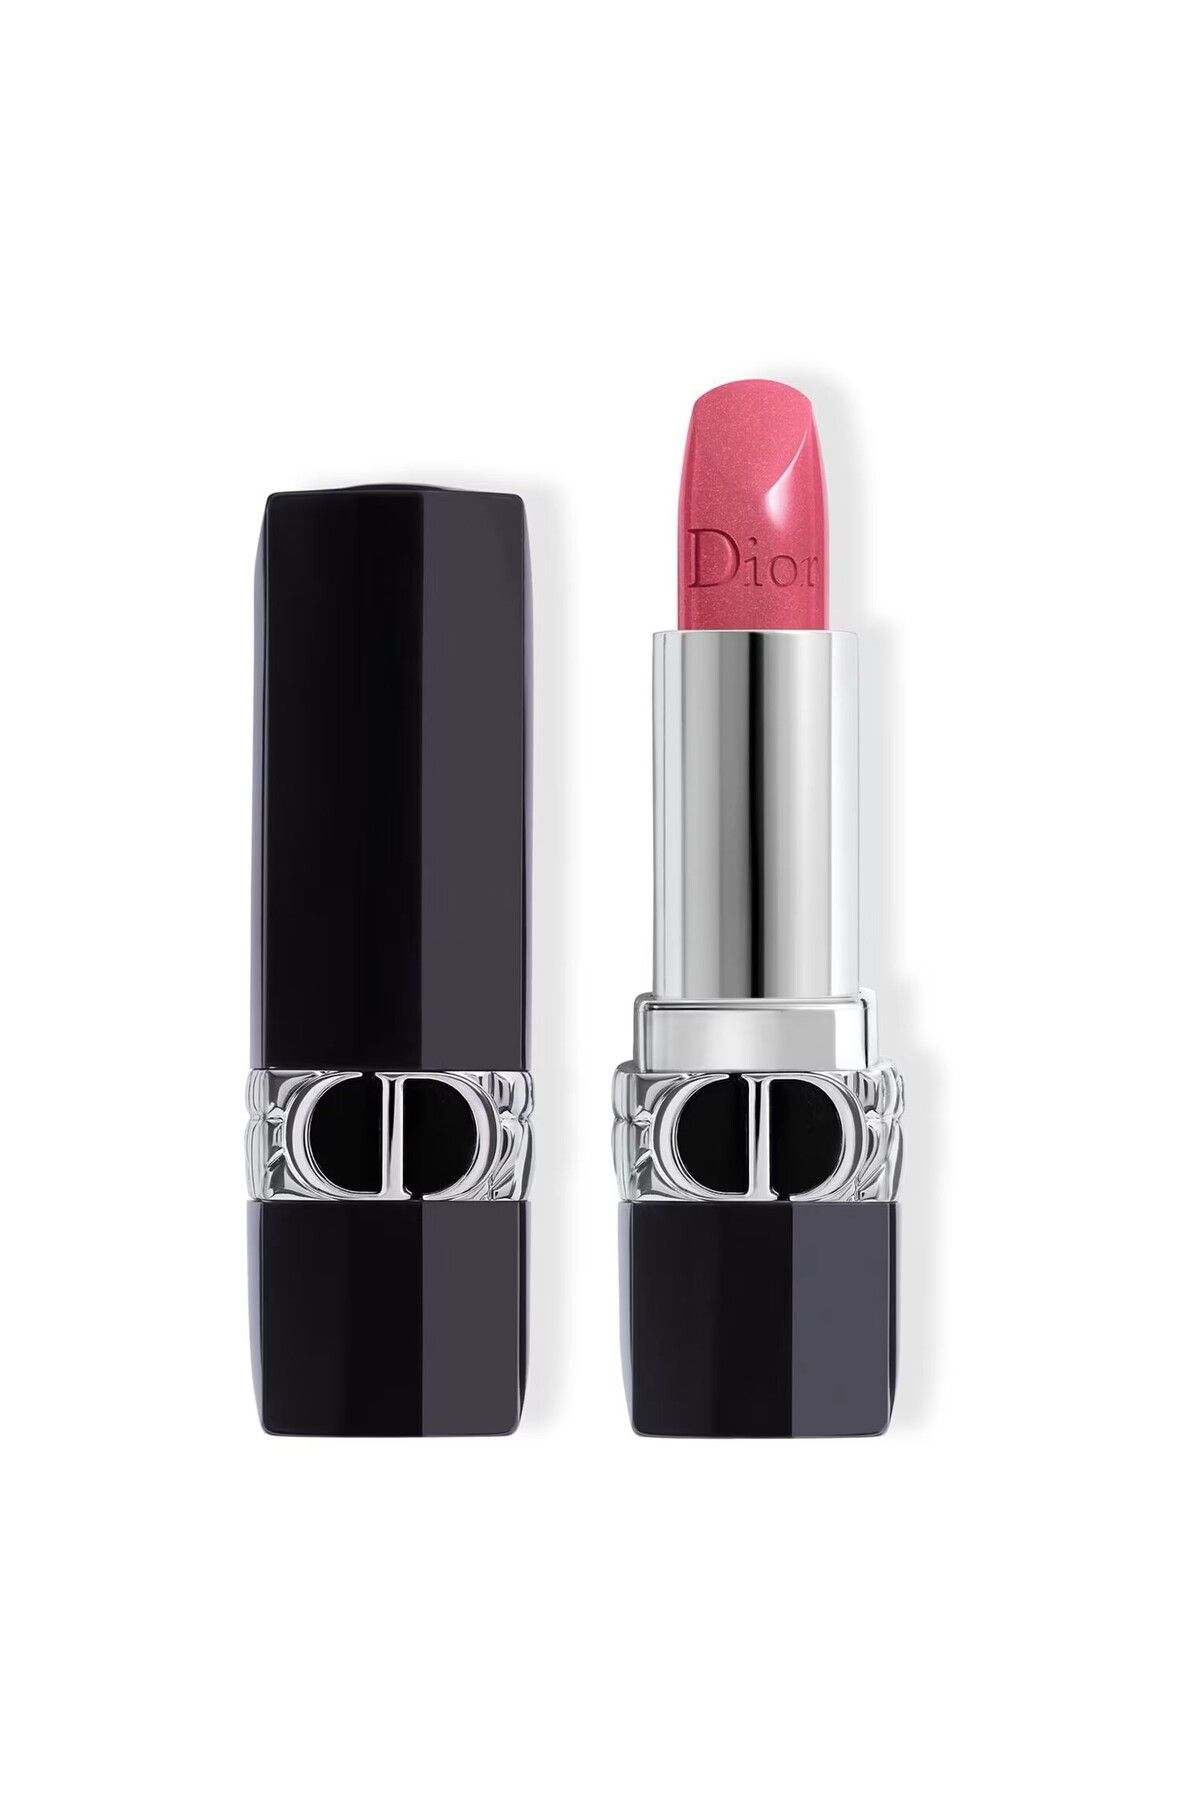 Dior Rouge Dior- 16 Saate Kadar Etkili Nar Çiçeği Özlü Mat Metalik Kadife Saten Bitişli Ruj